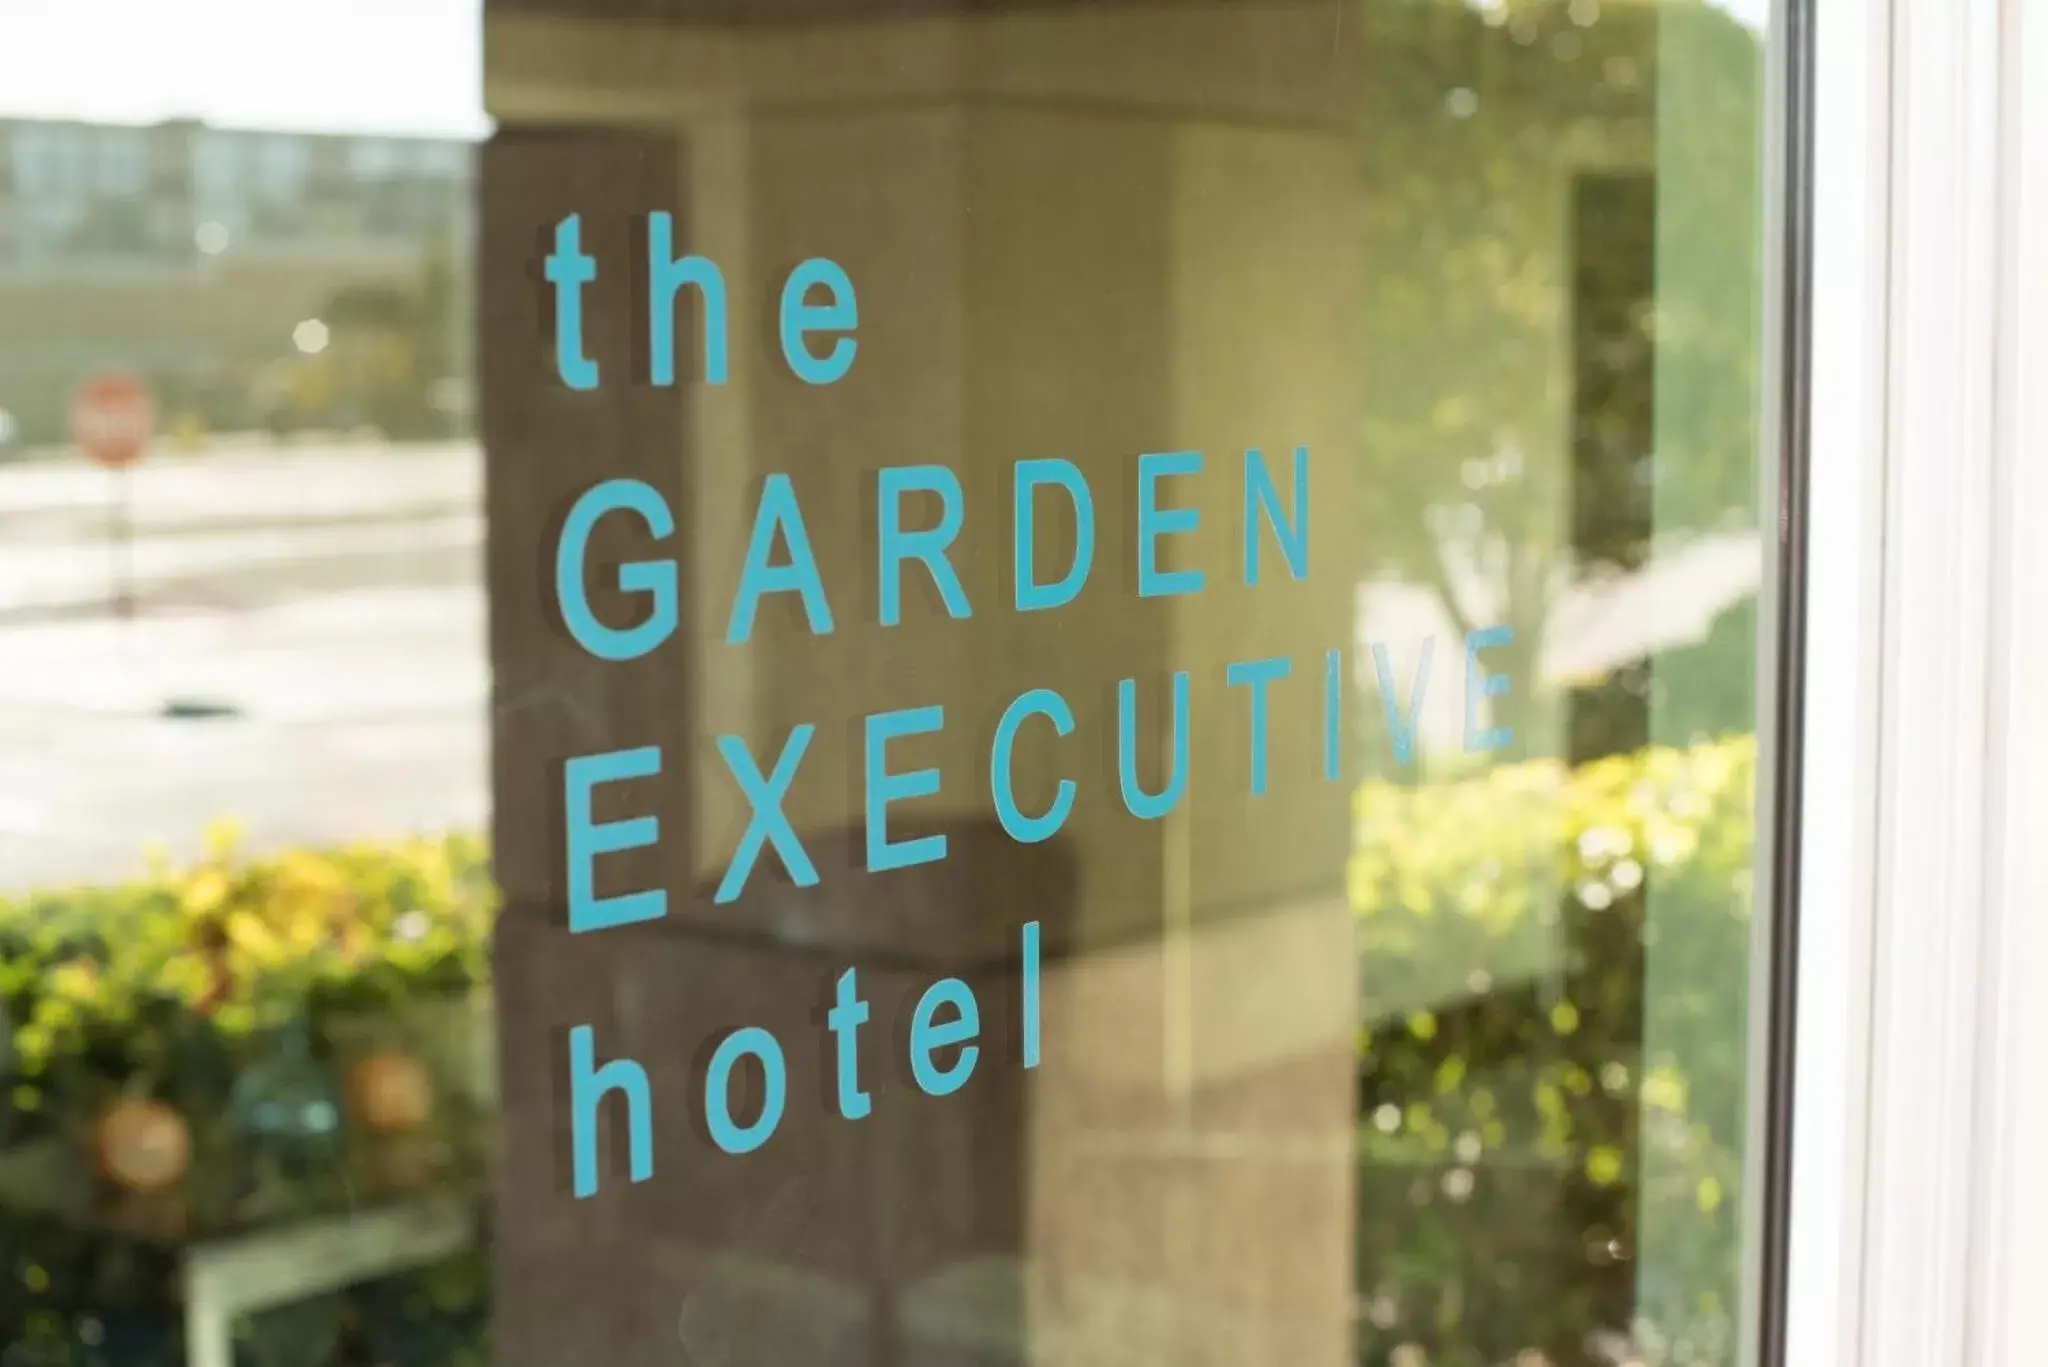 Property logo or sign in Garden Executive Hotel